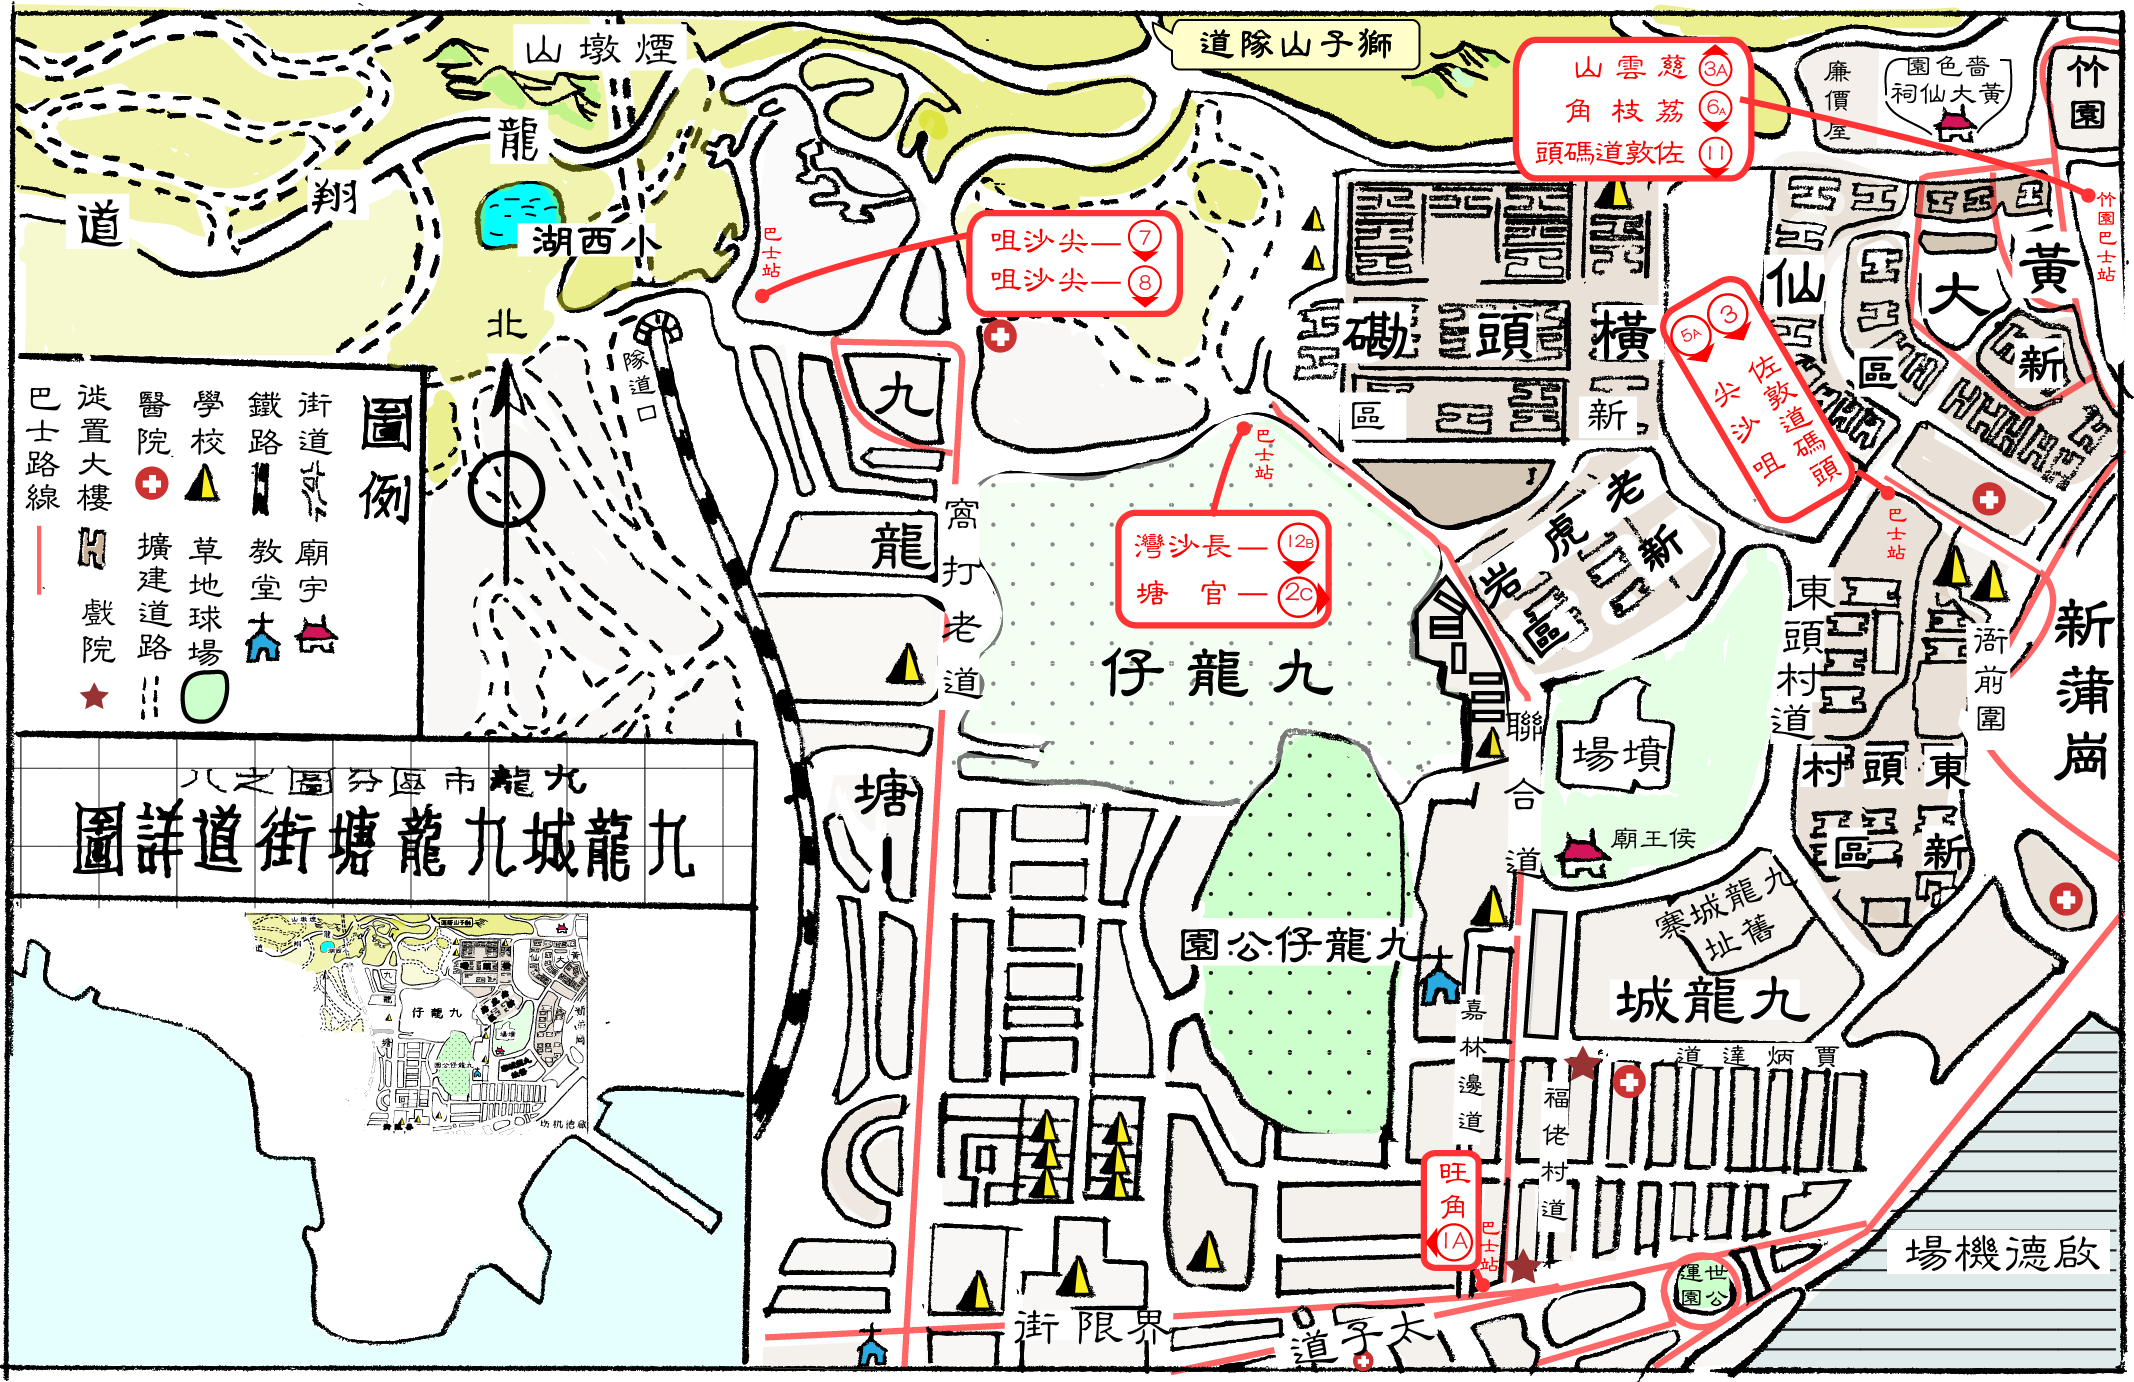 1967 啟德機場原址及附近環境（手繪地圖，參考：香港年鑑）